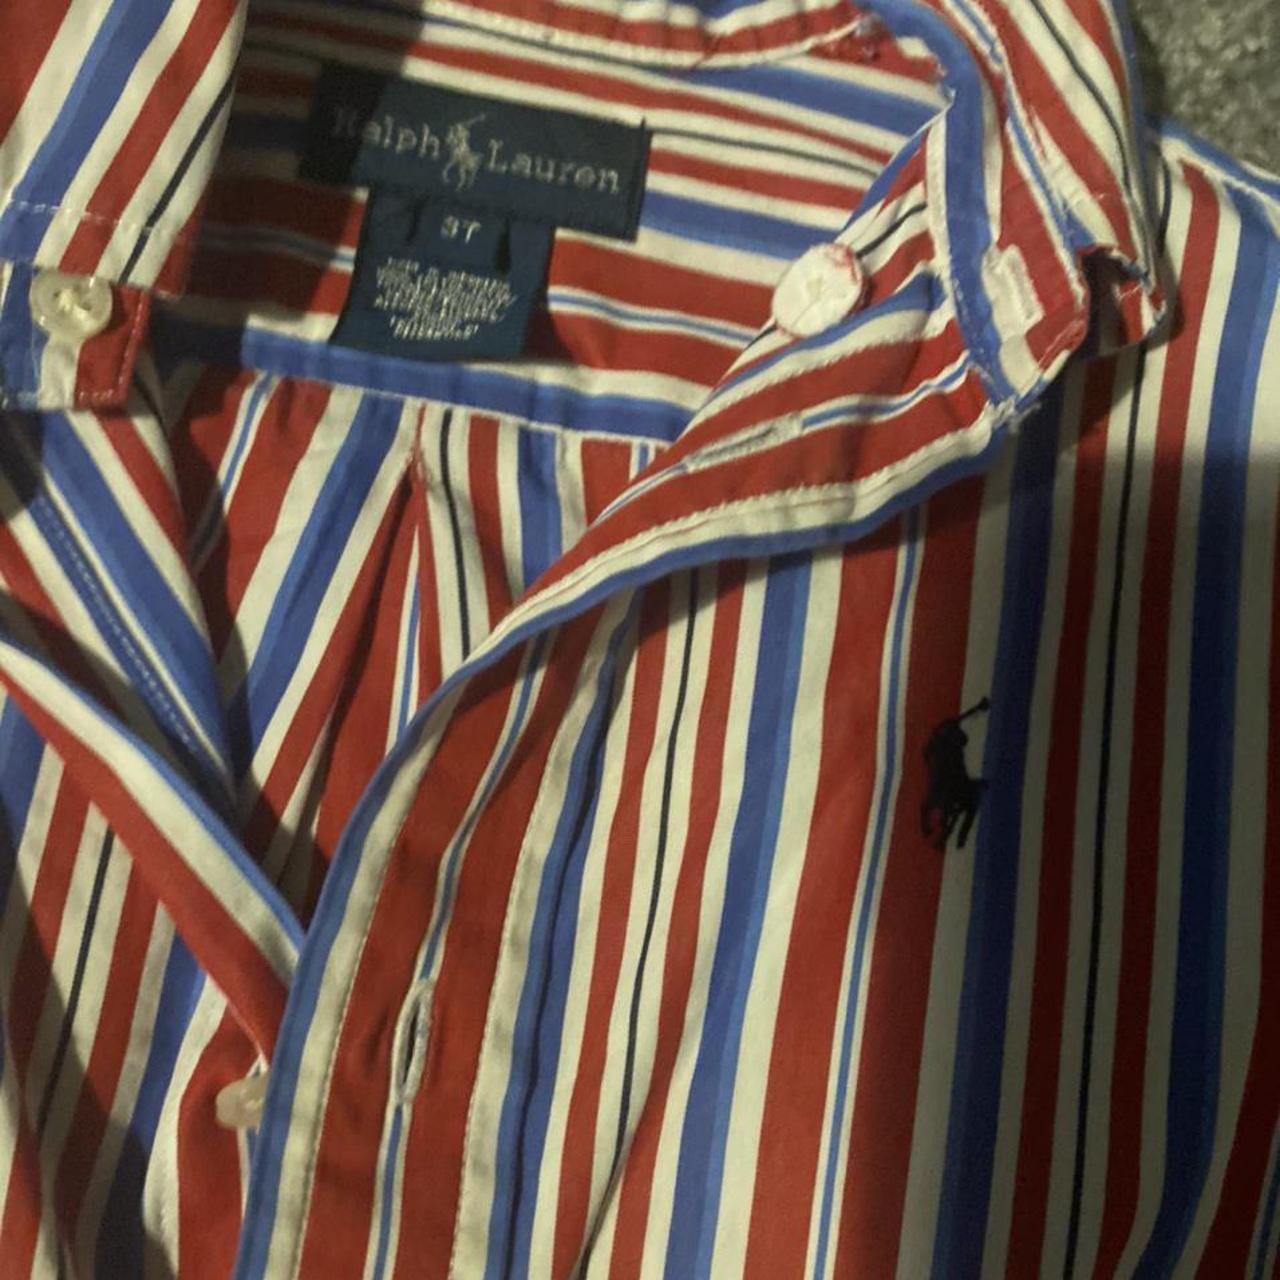 Boys Ralph Lauren shirt size 3 years - Depop